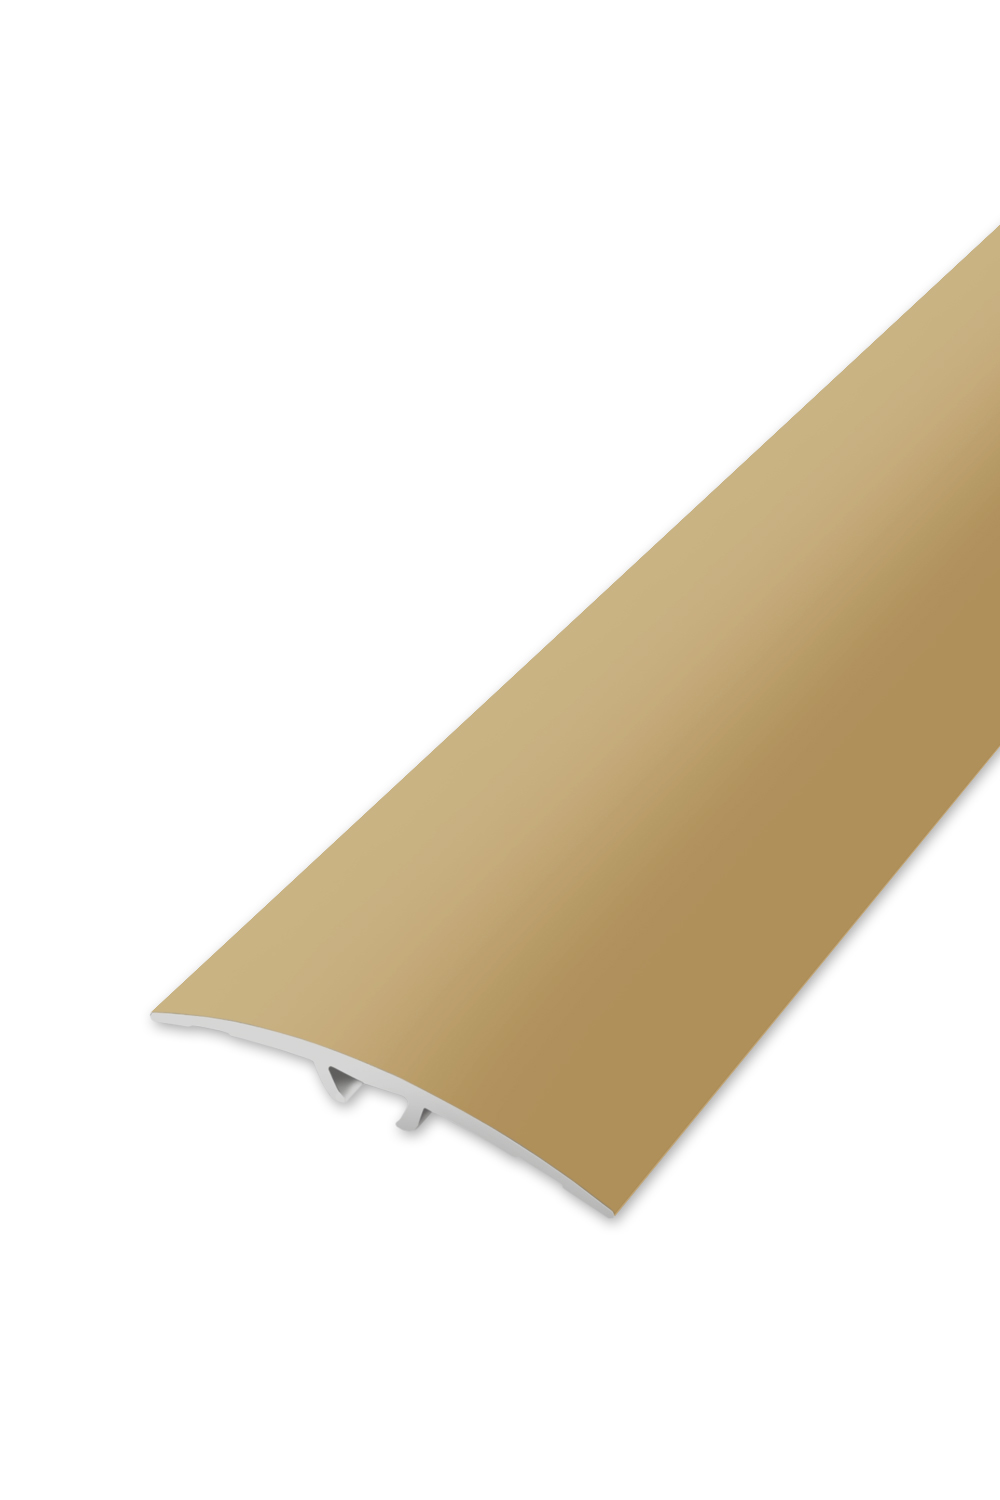 Přechodová lišta WELL 40 - Zlatá 90 cm